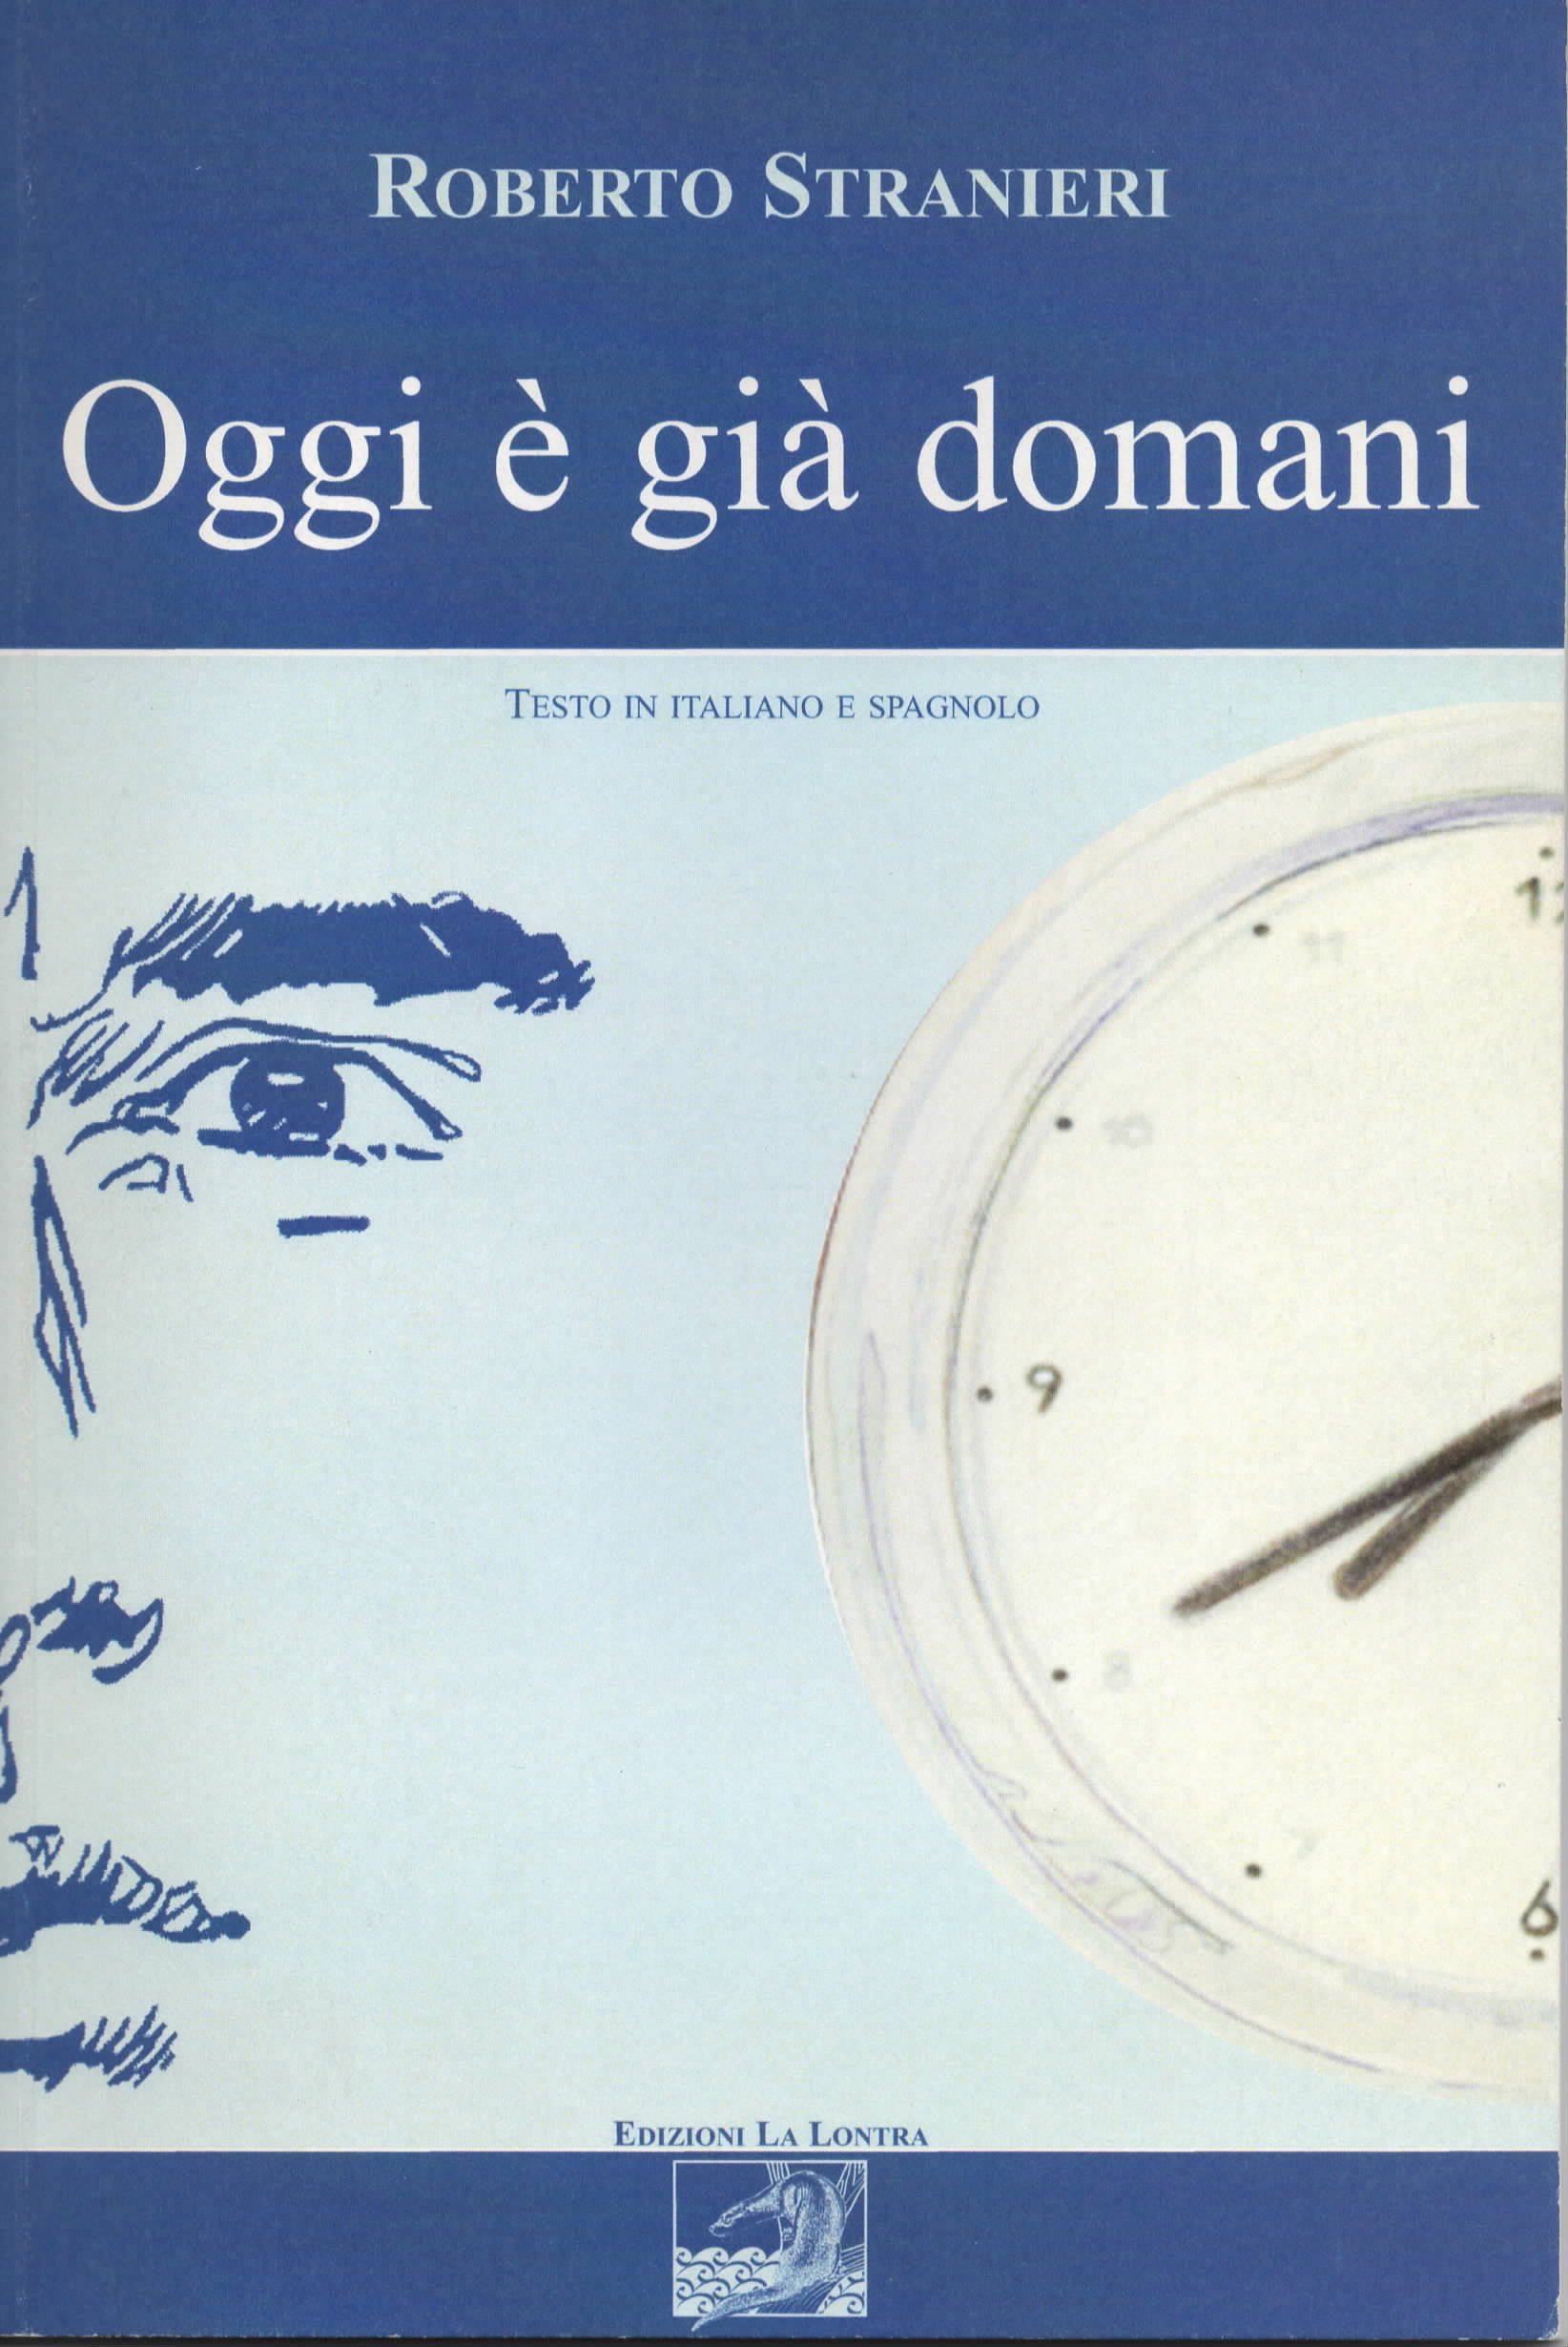 2007 - Copertina per il racconto 'Oggi é già  domani' di Roberto Stranieri, edizioni La Lontra